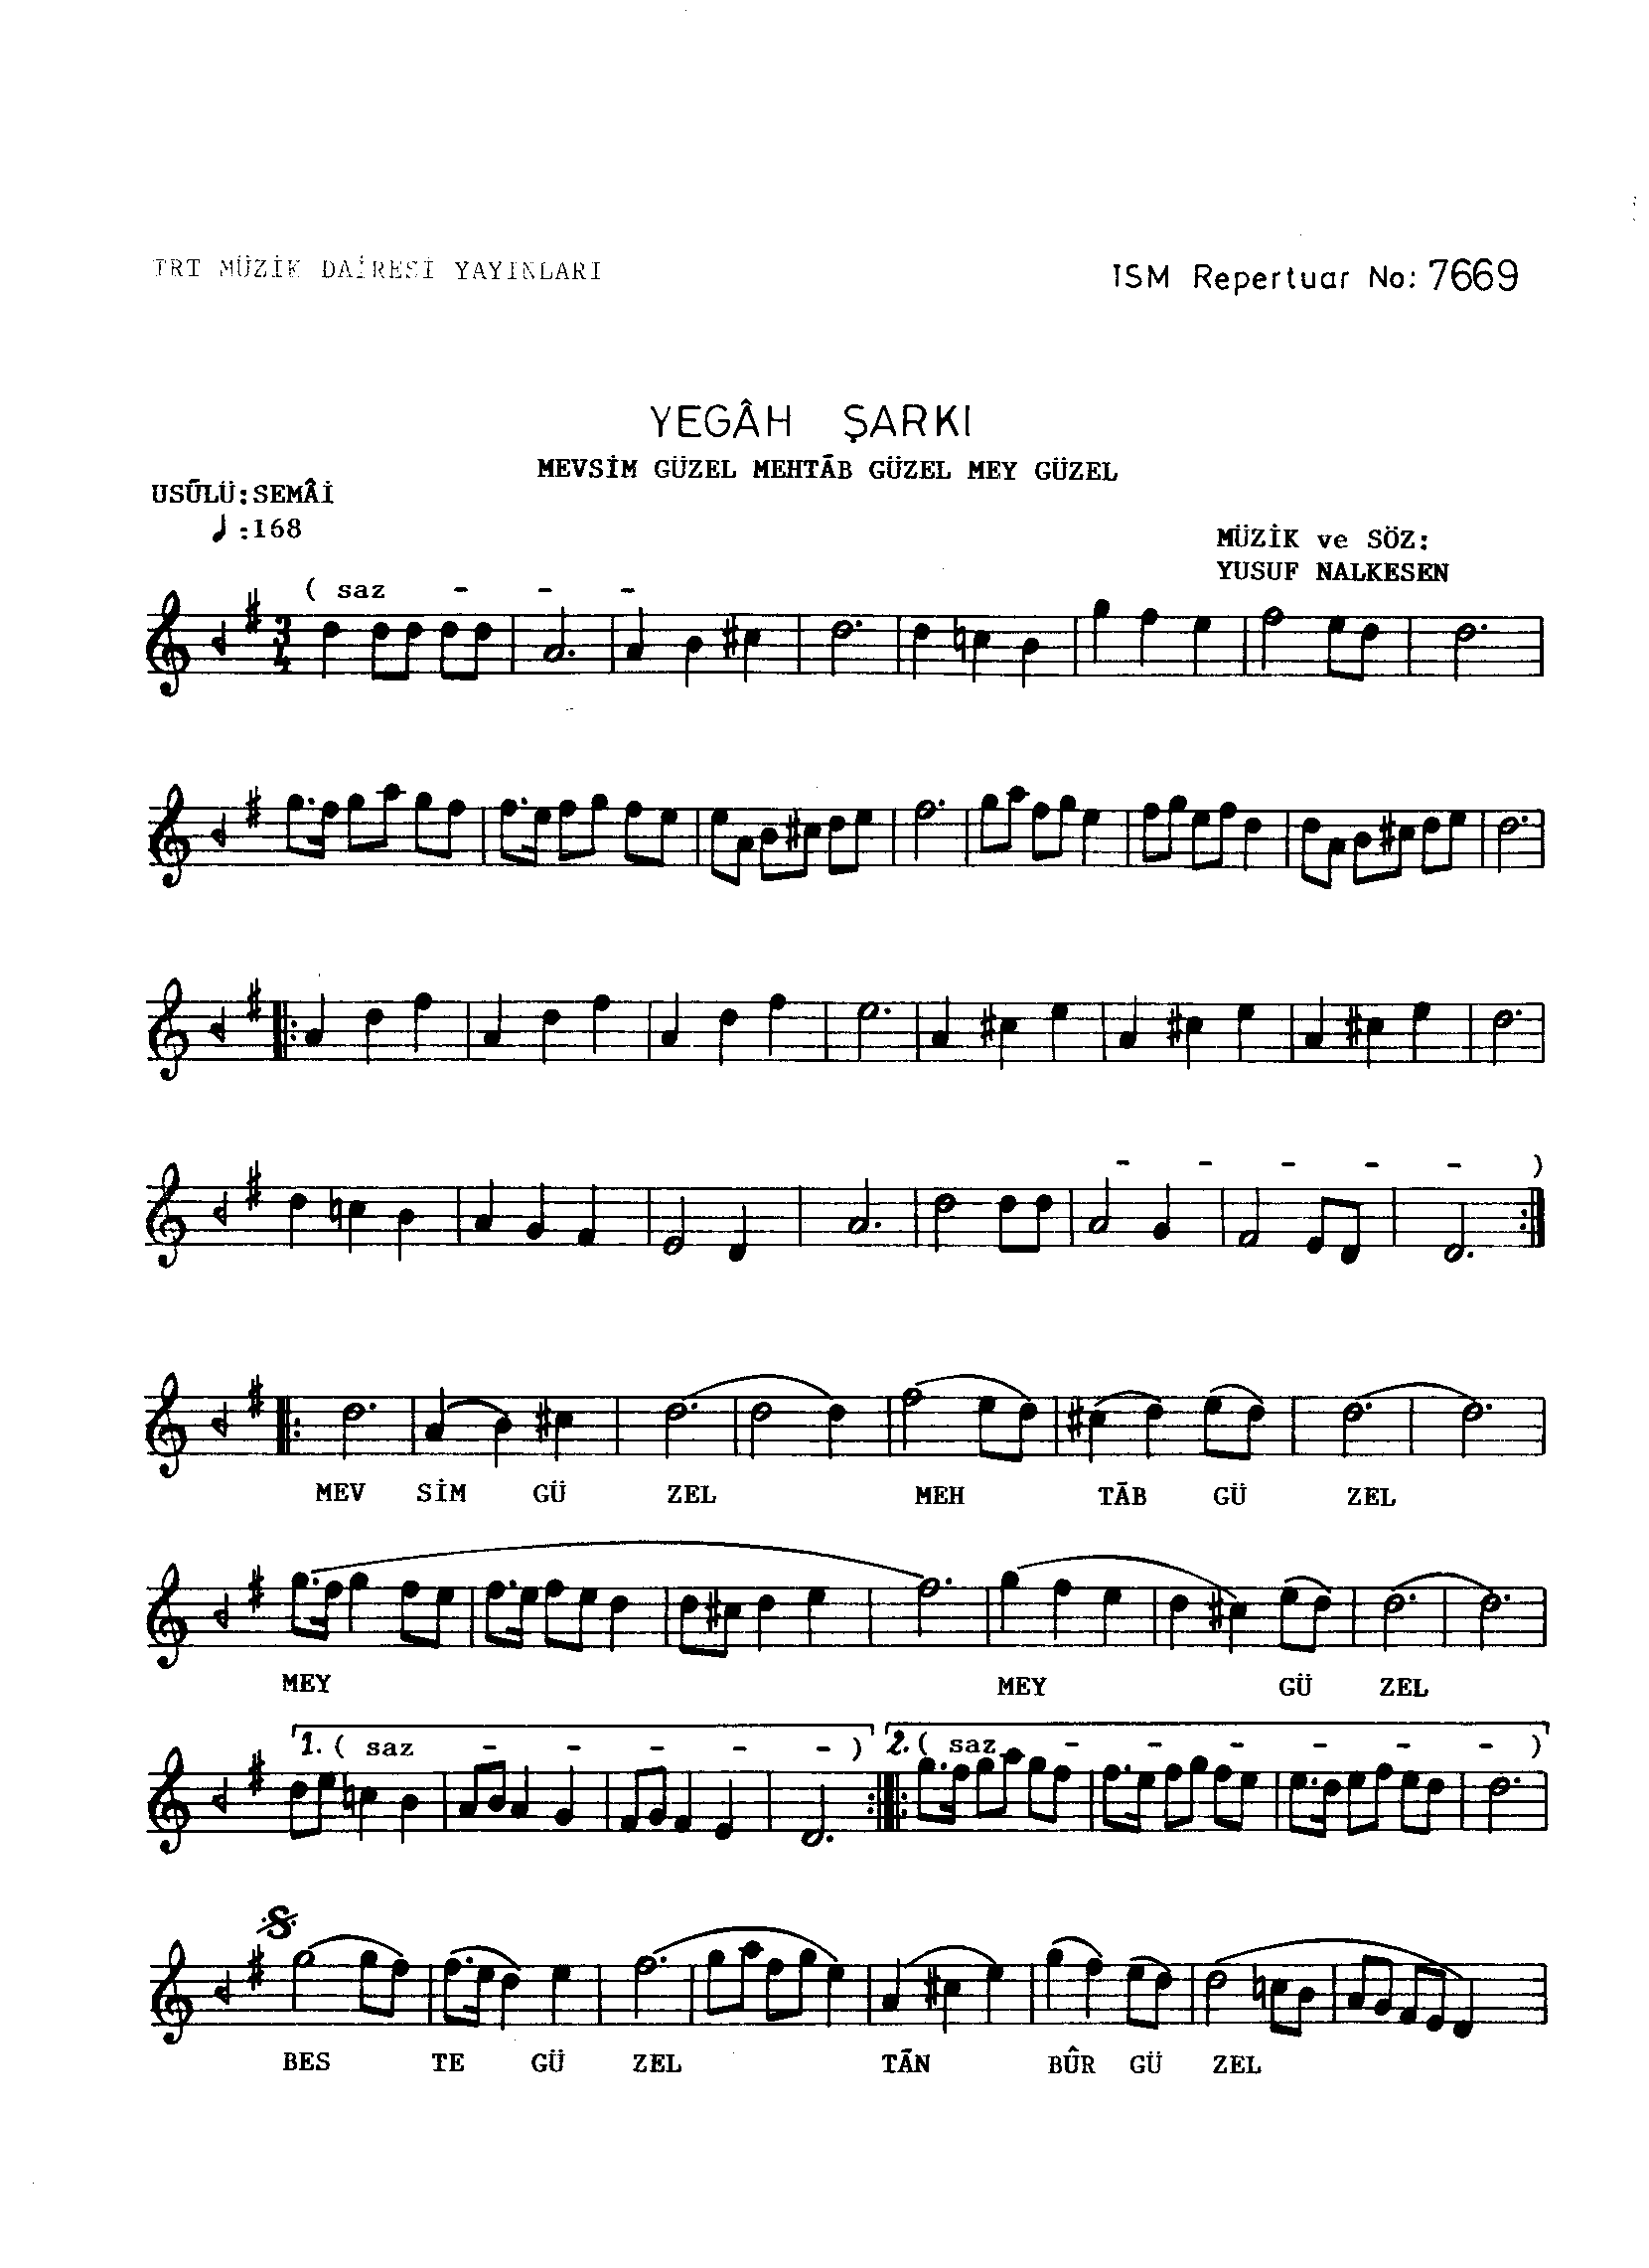 Yegah - Şarkı - Yusuf Nalkesen - Sayfa 1